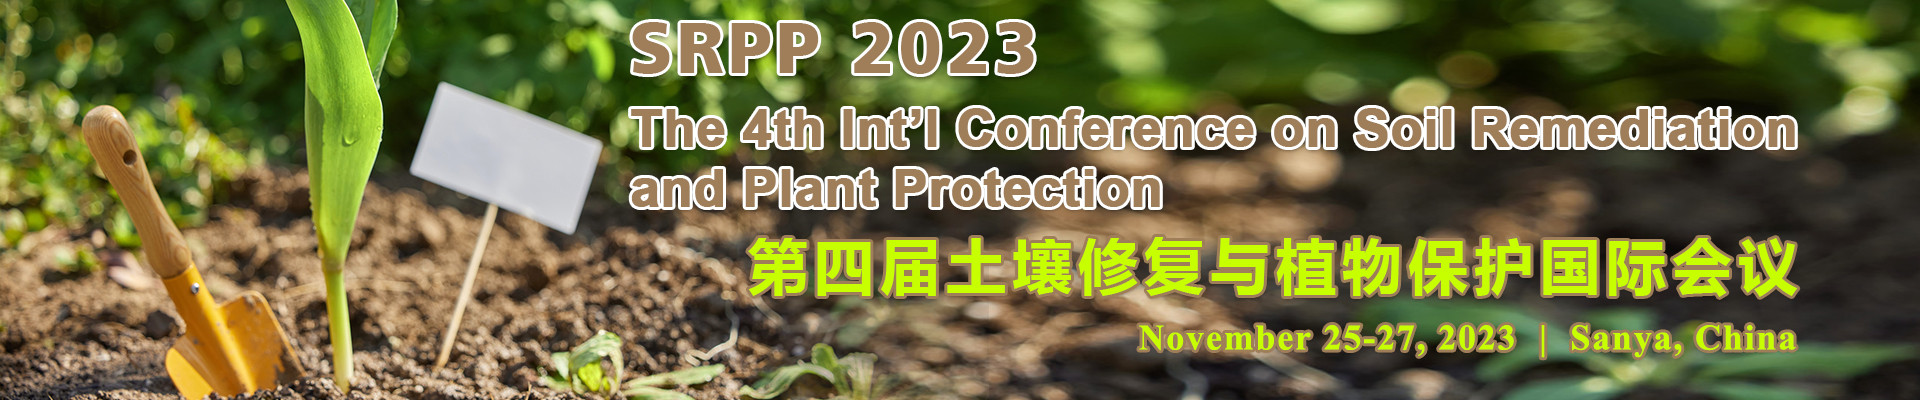 第四屆土壤修復與植物保護國際會議(SRPP 2023)?